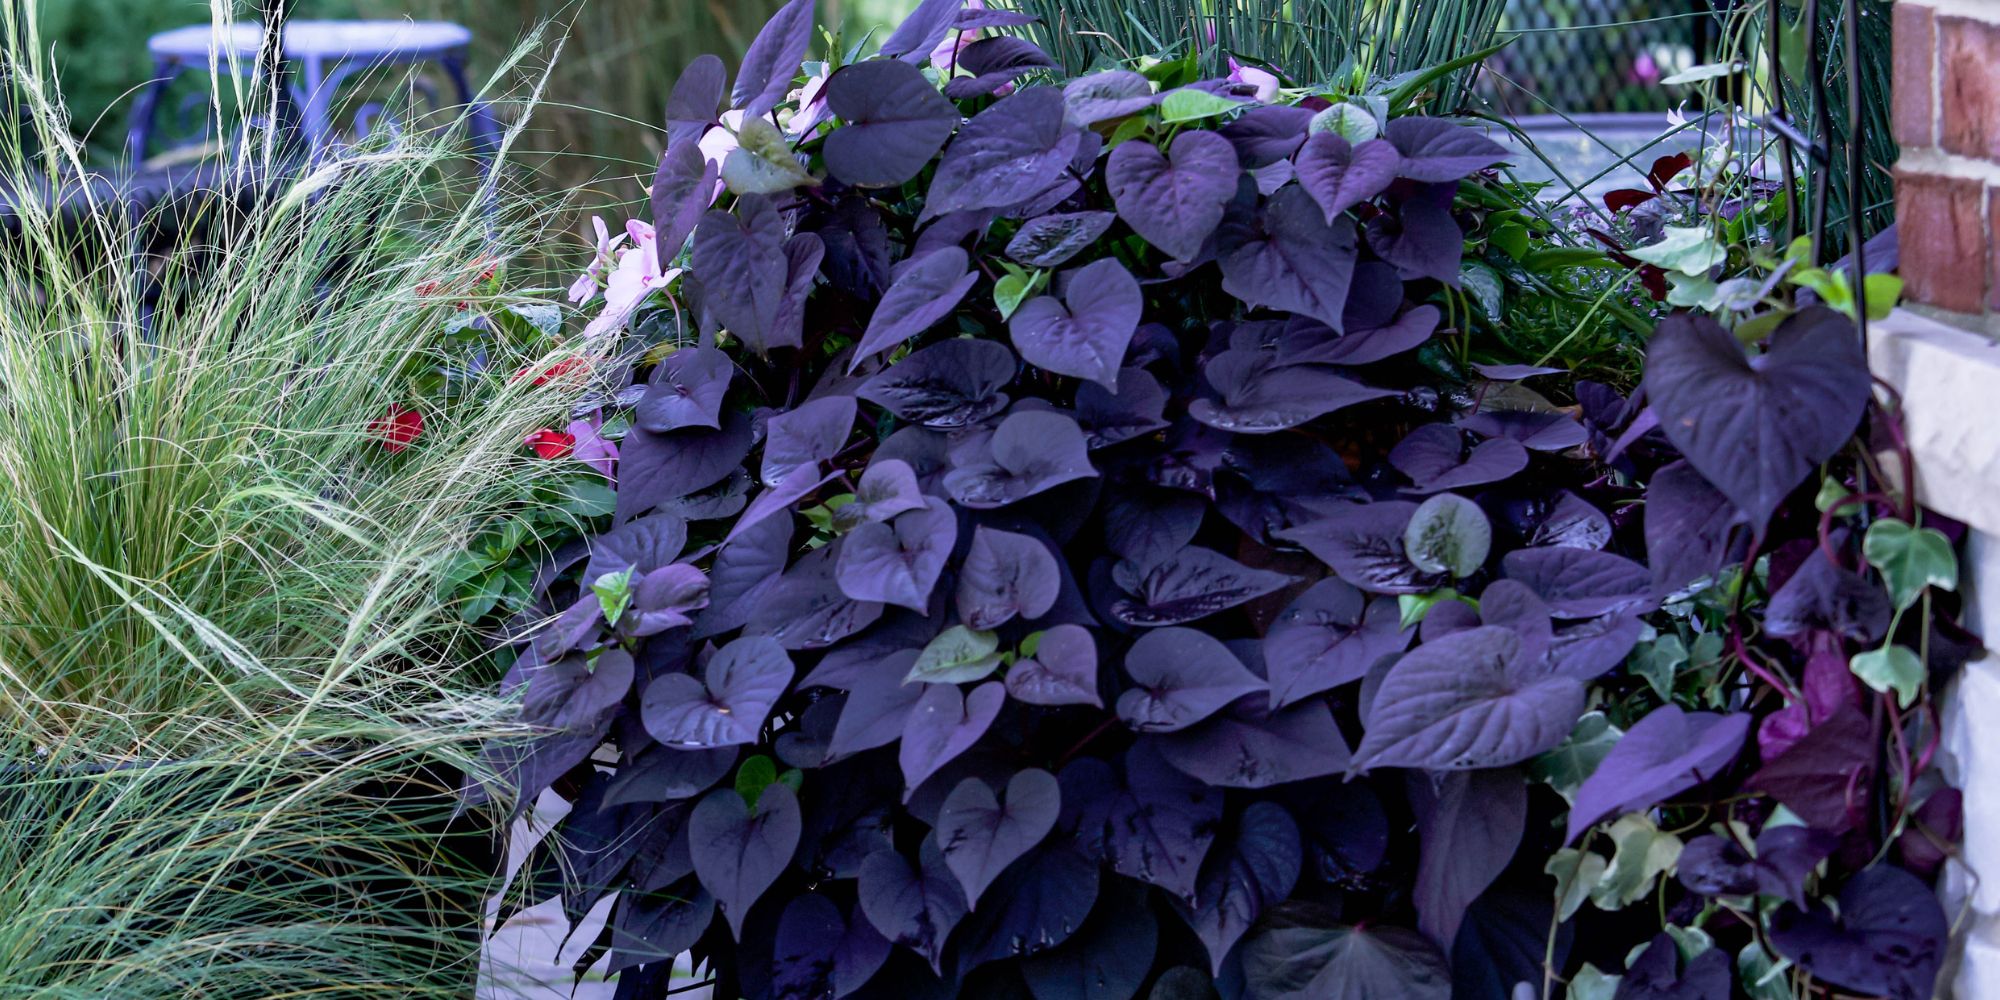 Batat har vackra blad i lime eller mörk purpur 